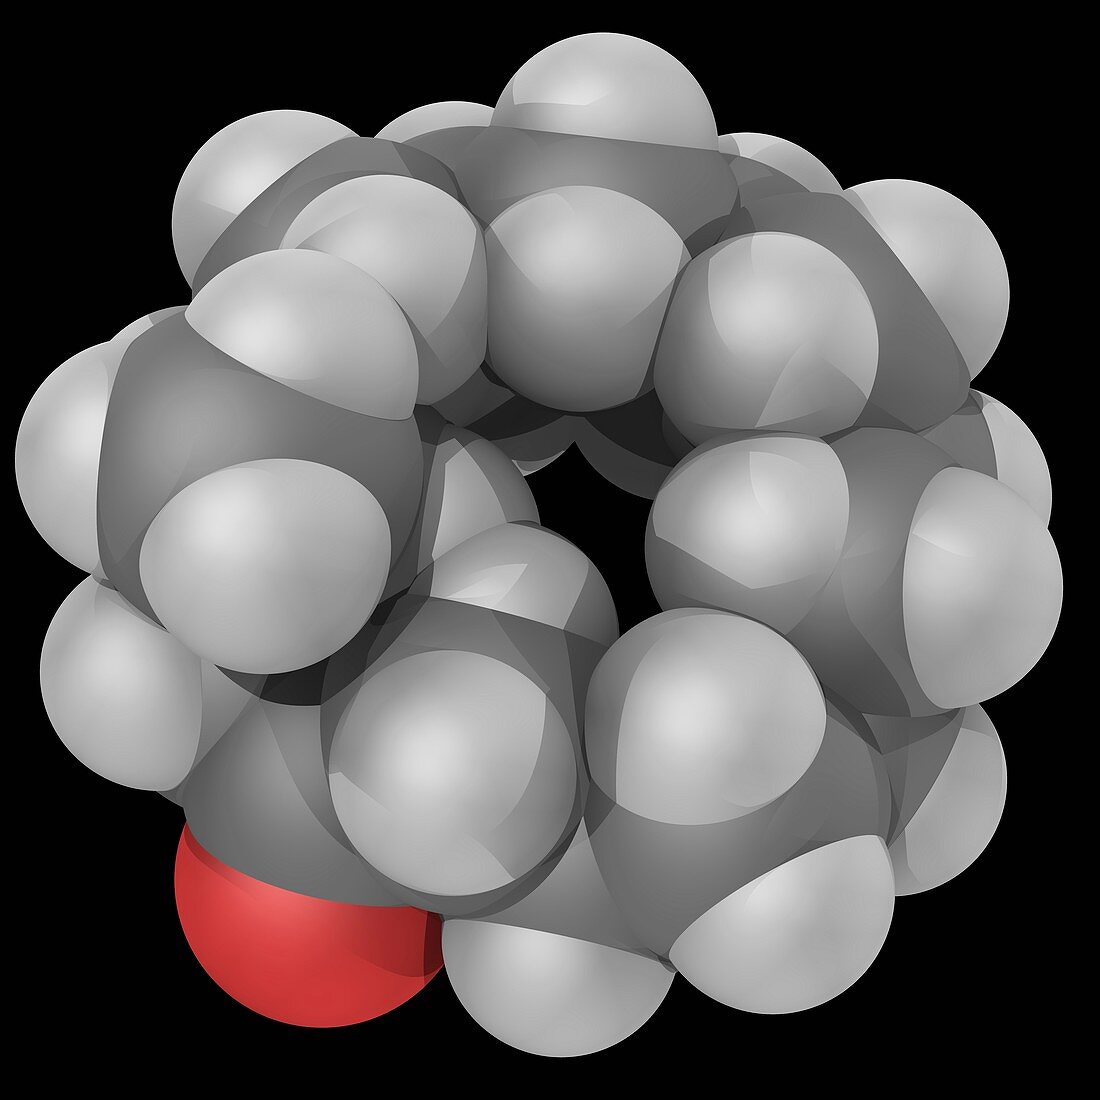 Muscone molecule